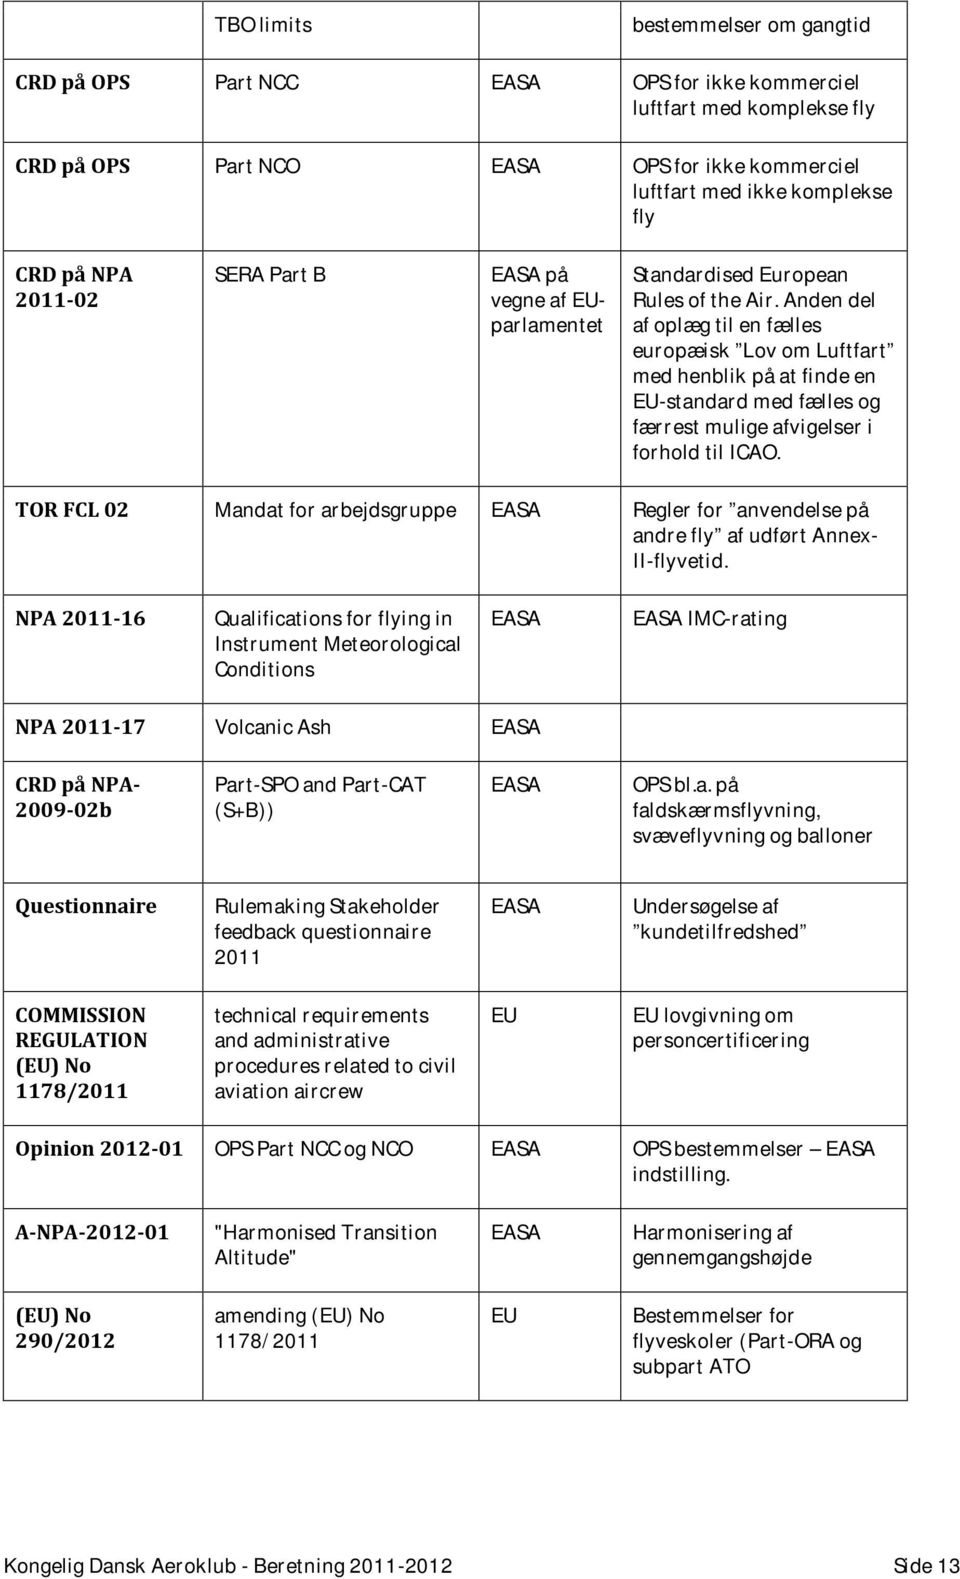 A-NPA-2012-01 (EU) No 290/2012 Volcanic Ash EASA Rulemaking Stakeholder feedback questionnaire 2011 EASA bestemmelser om gangtid OPS for ikke kommerciel luftfart med komplekse fly OPS for ikke